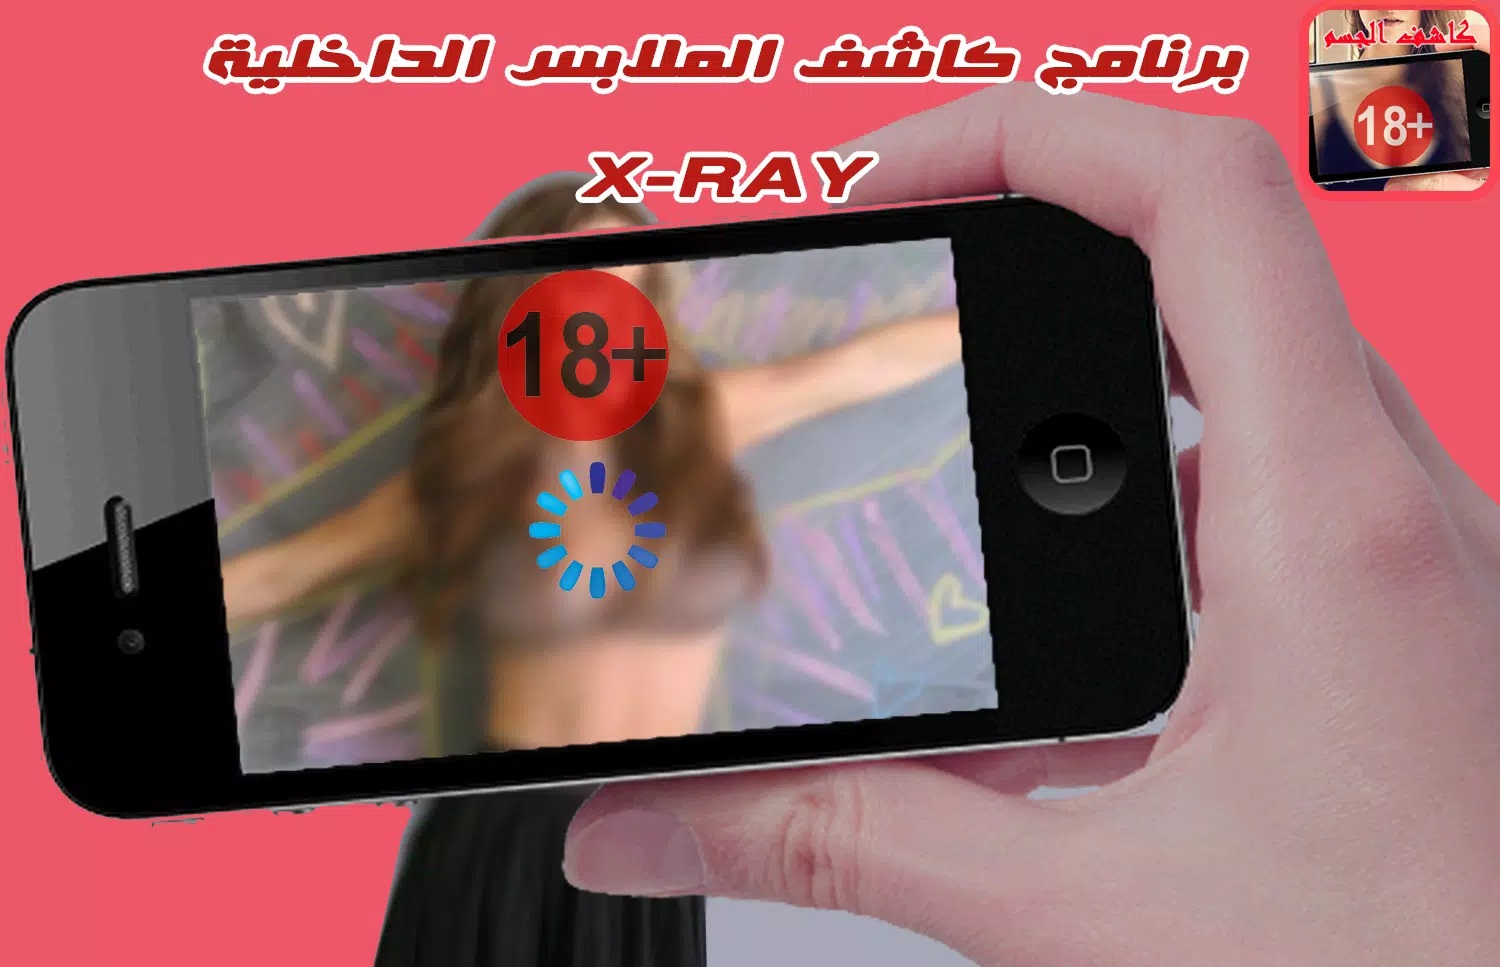 كاشف الملابس الداخلية القوي APK für Android herunterladen